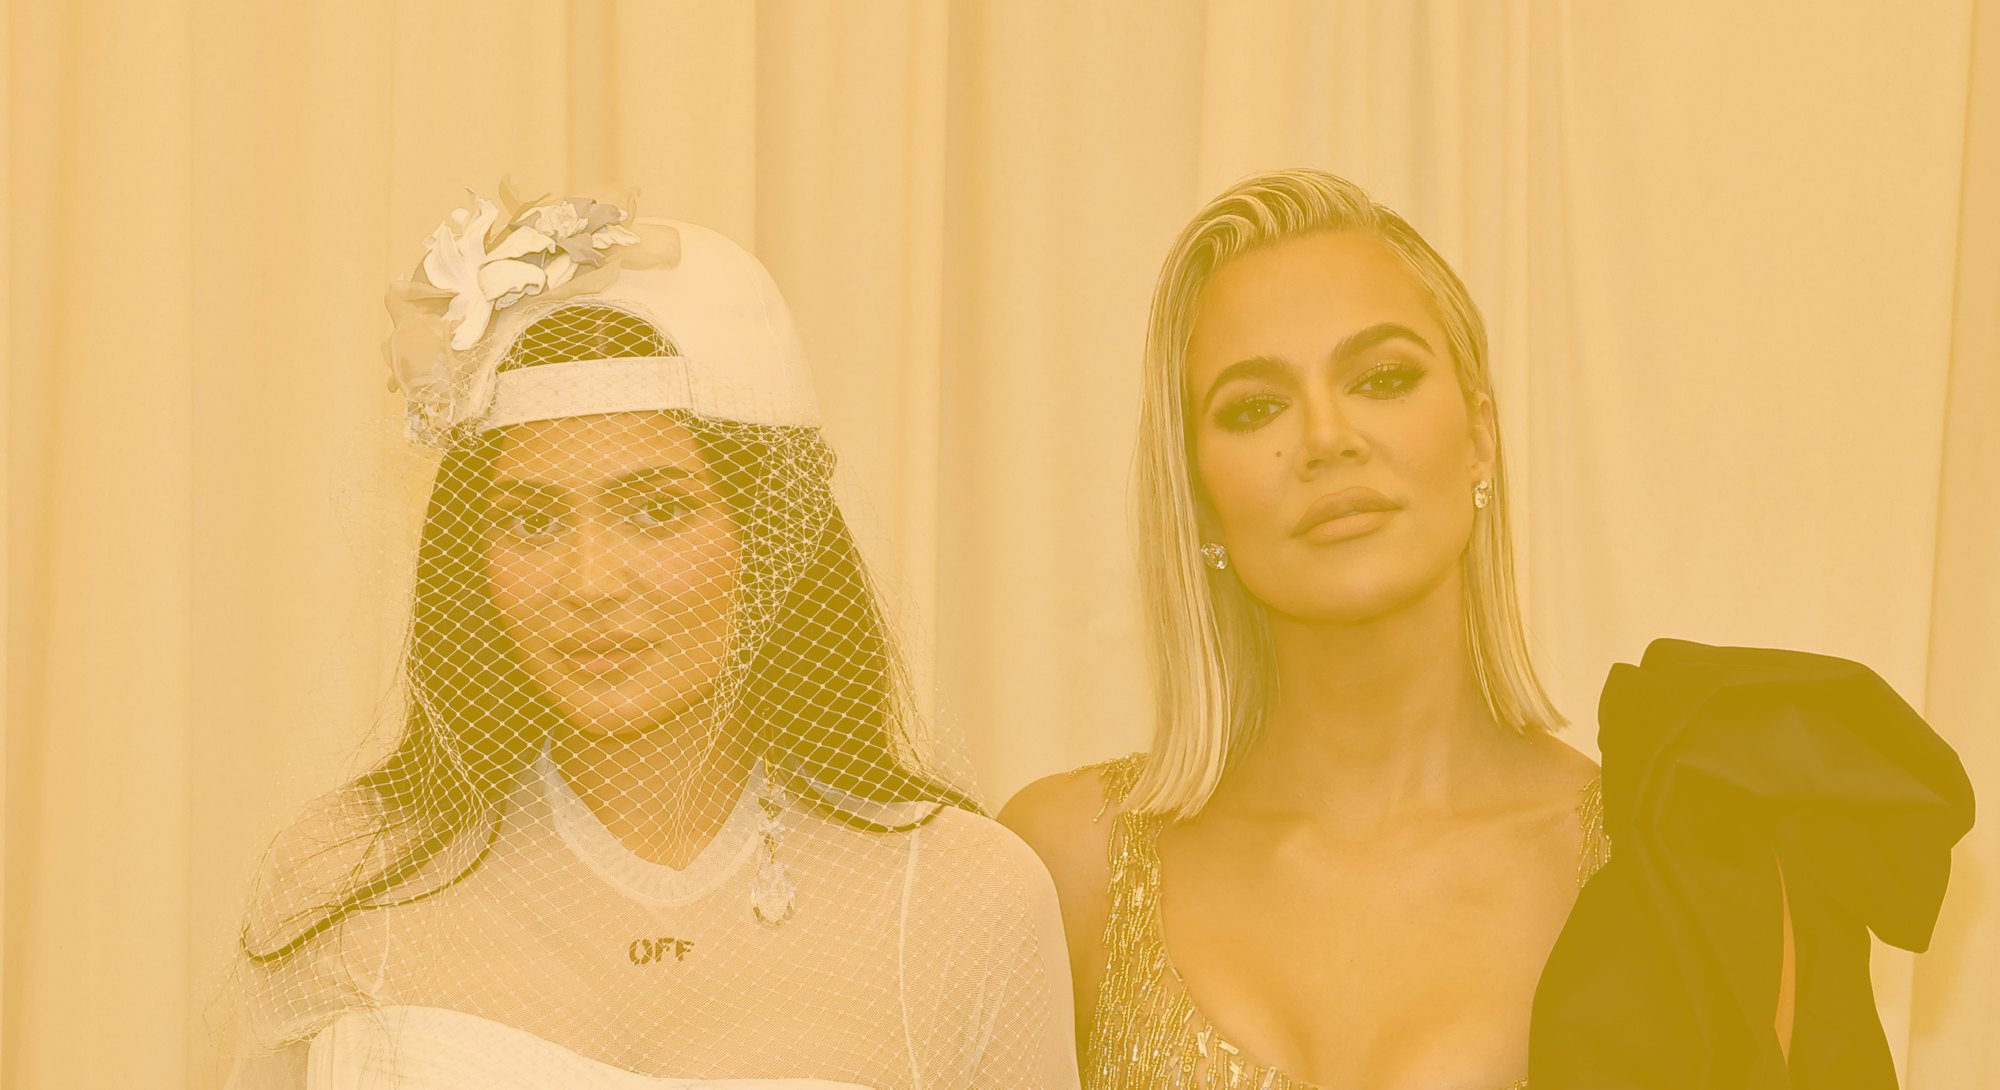 The Kardashians at the Met Gala red carpet 2022